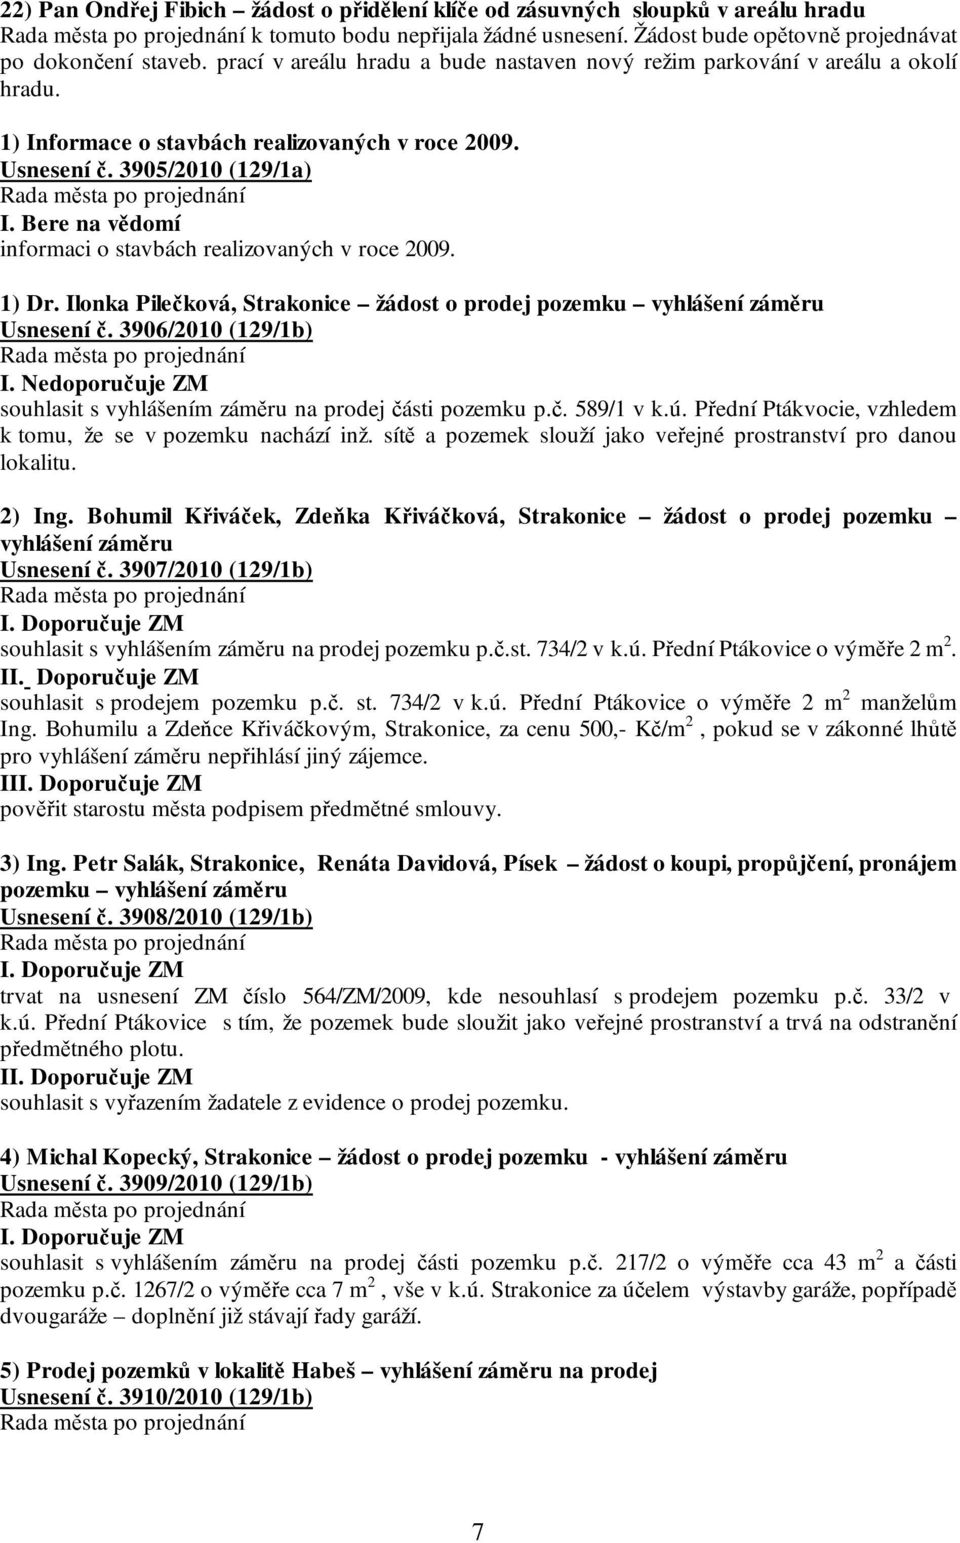 Bere na vědomí informaci o stavbách realizovaných v roce 2009. 1) Dr. Ilonka Pilečková, Strakonice žádost o prodej pozemku vyhlášení záměru Usnesení č. 3906/2010 (129/1b) I.